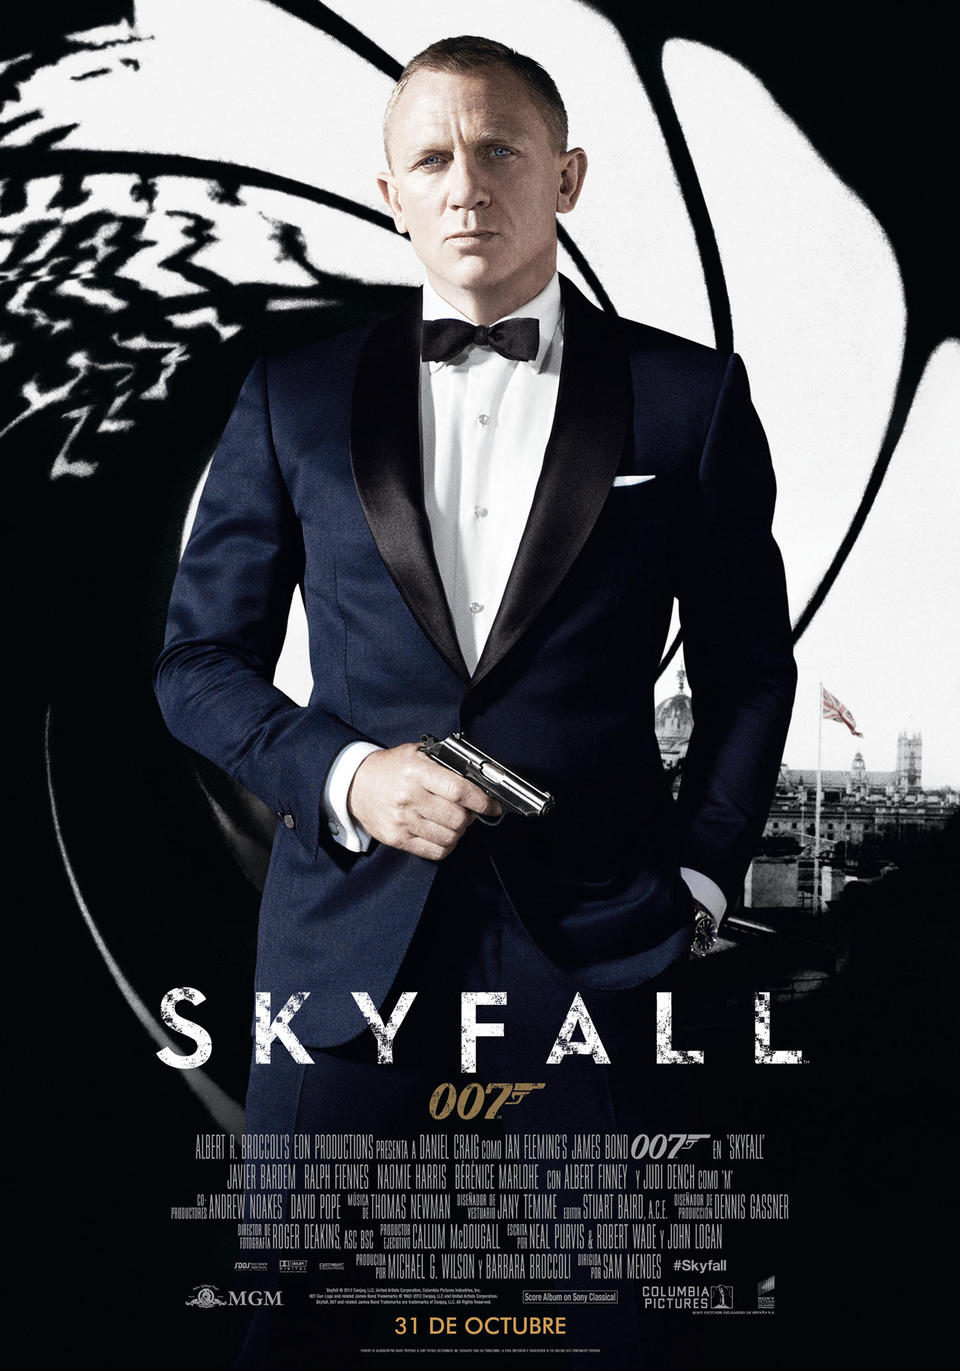 [007] Skyfall [Bond 23] (Sam Mendes, 2012) 004-skyfall-espana